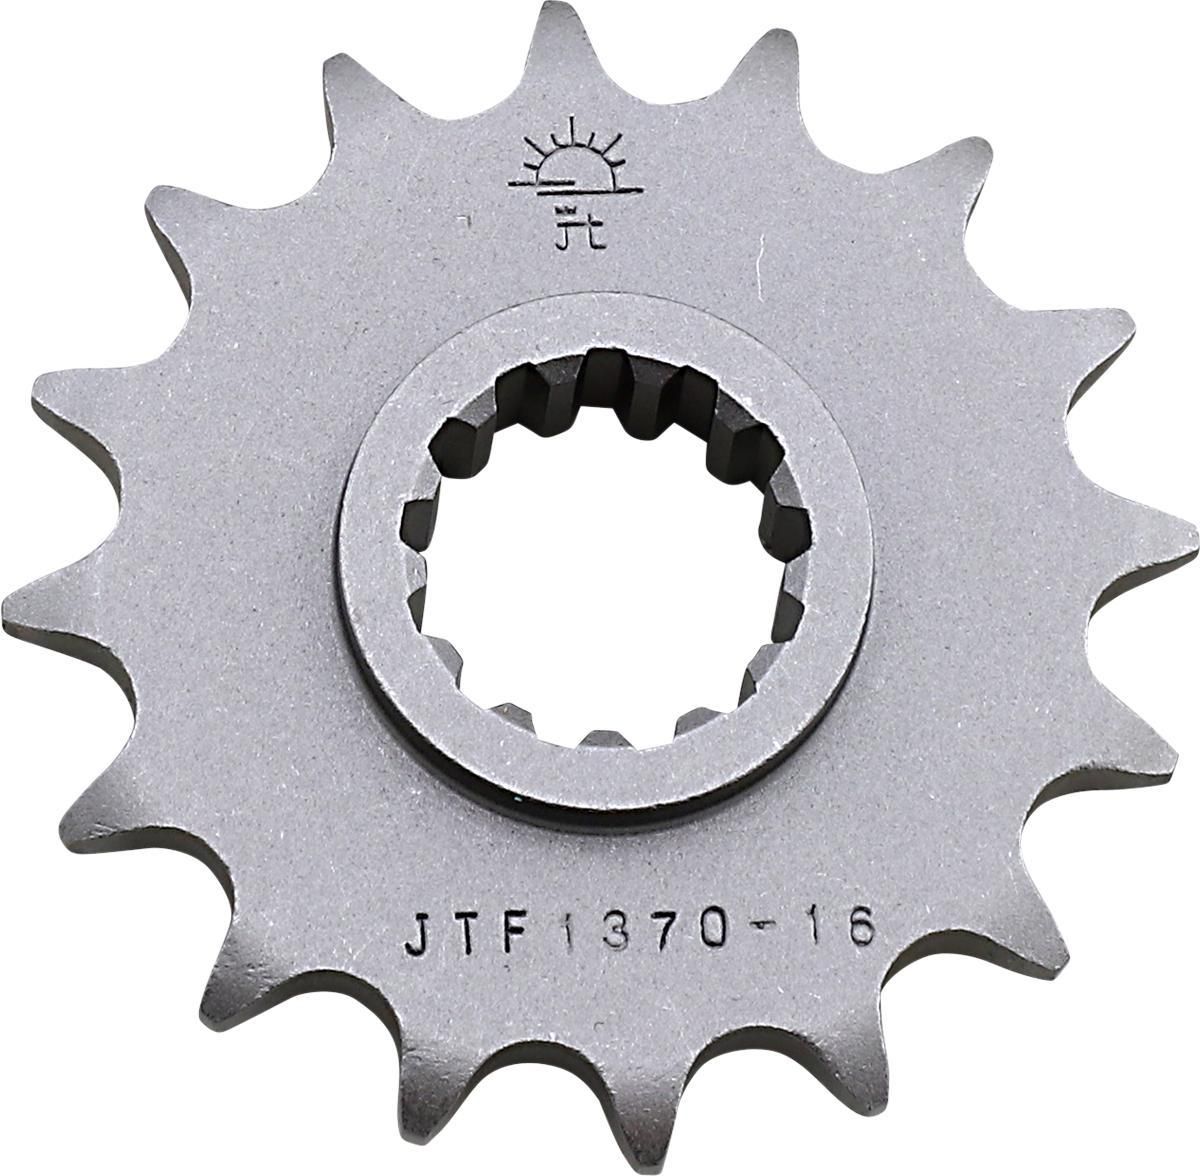 3EDK-JT-SPROCKET-JTF1370-16 Countershaft Sprocket - 16 Tooth